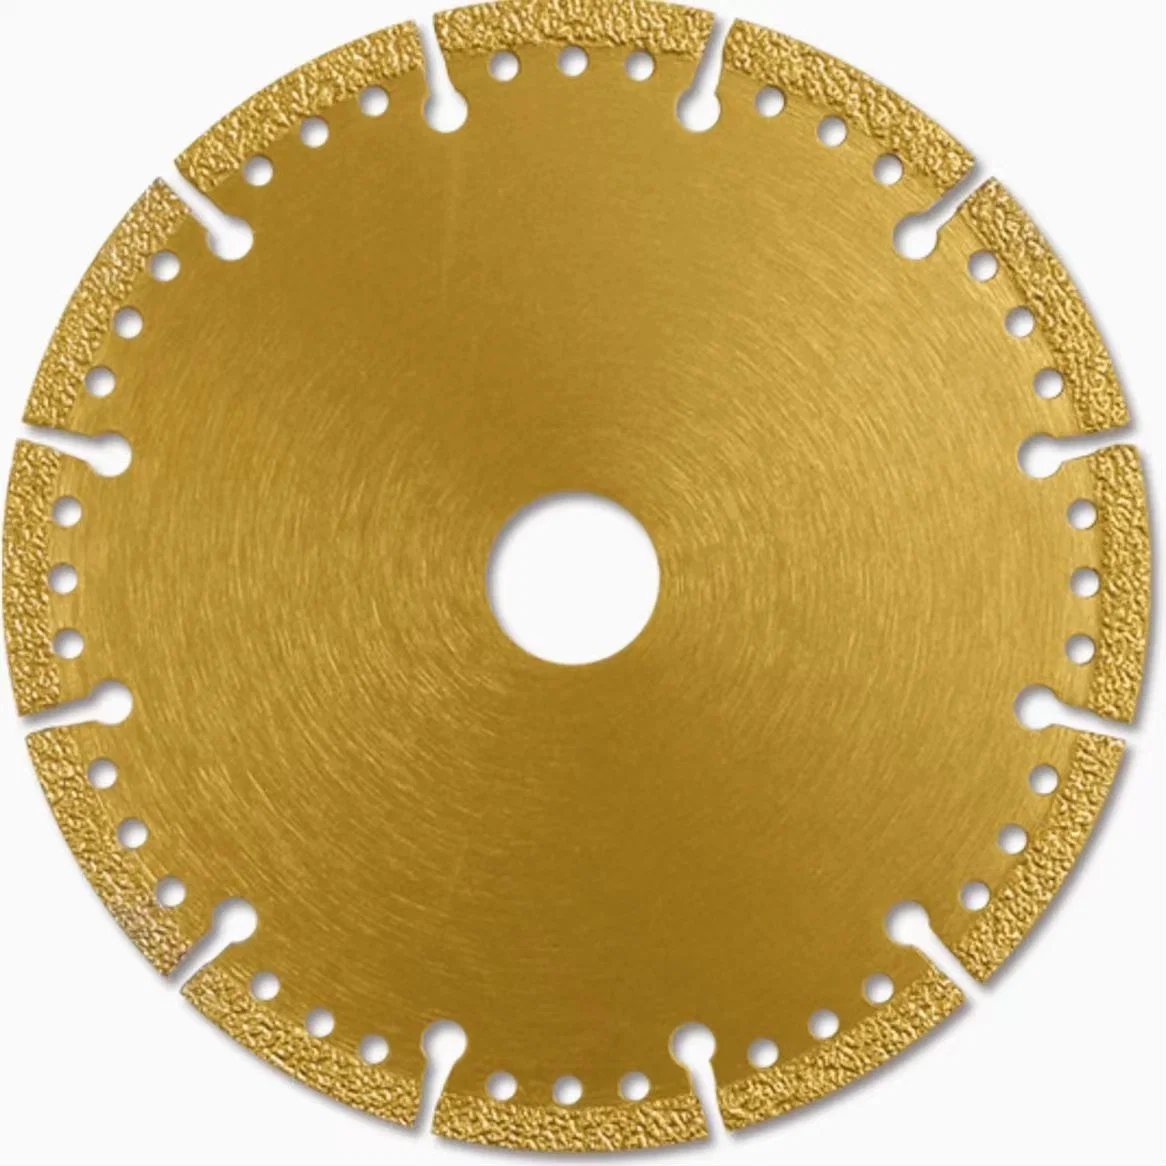 Le Brasage brasée vide Diamond lame de scie à disque de coupe pour les métaux fer abrasif en béton en acier inoxydable pour meuleuse d'angle des outils à main